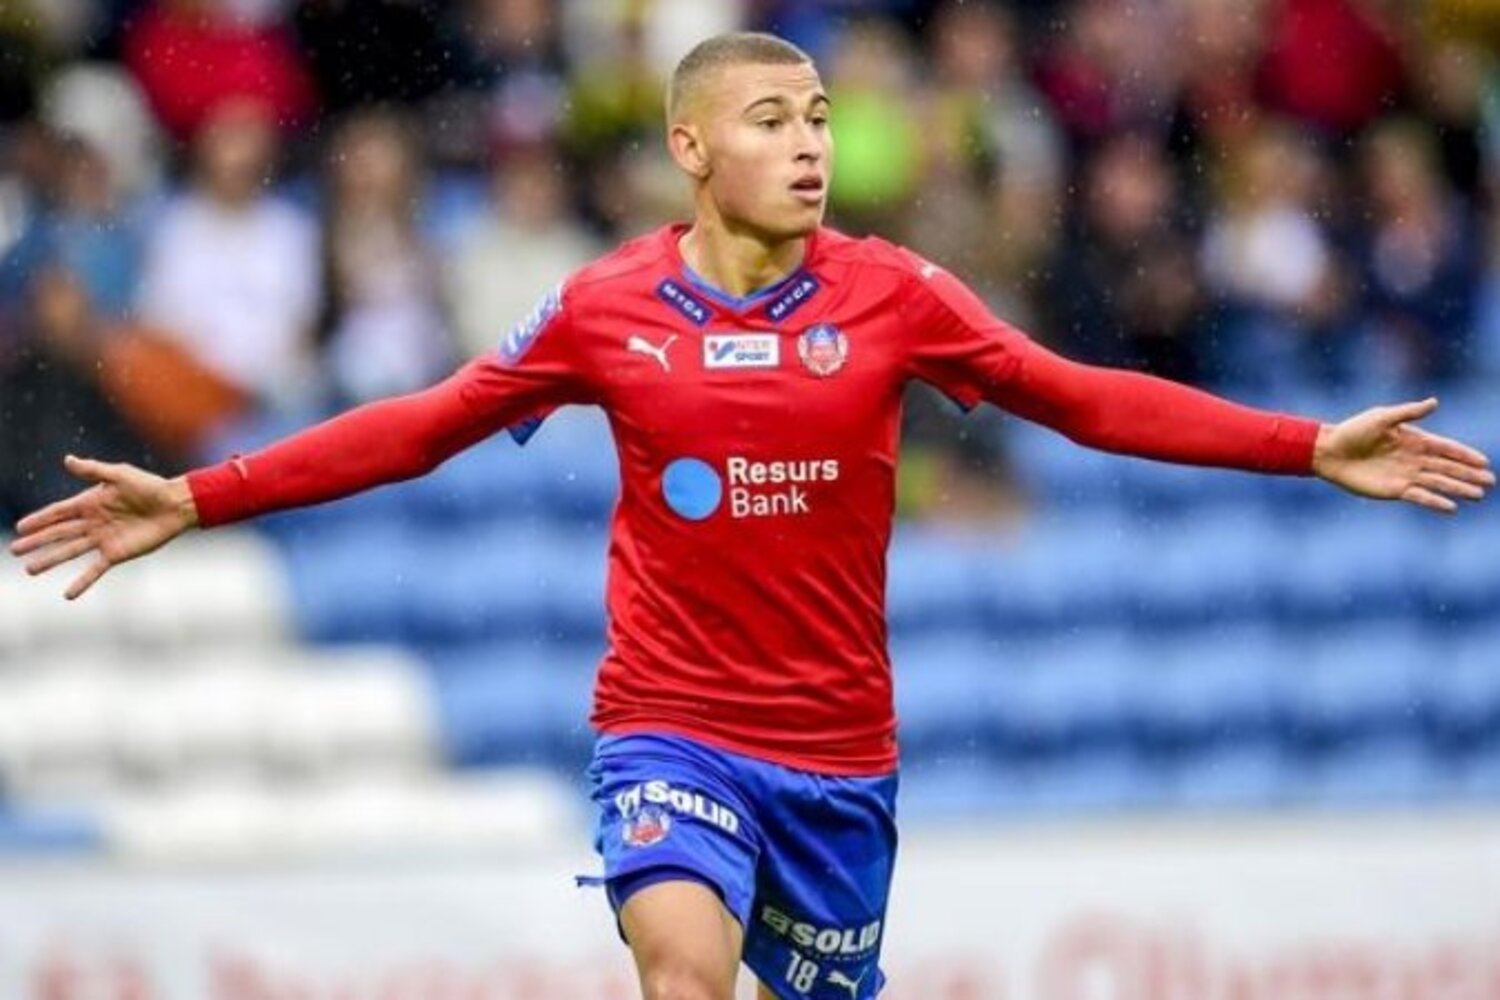 OFICJALNIE: Jordan Larsson zagra w Spartaku Moskwa | Transfery.info